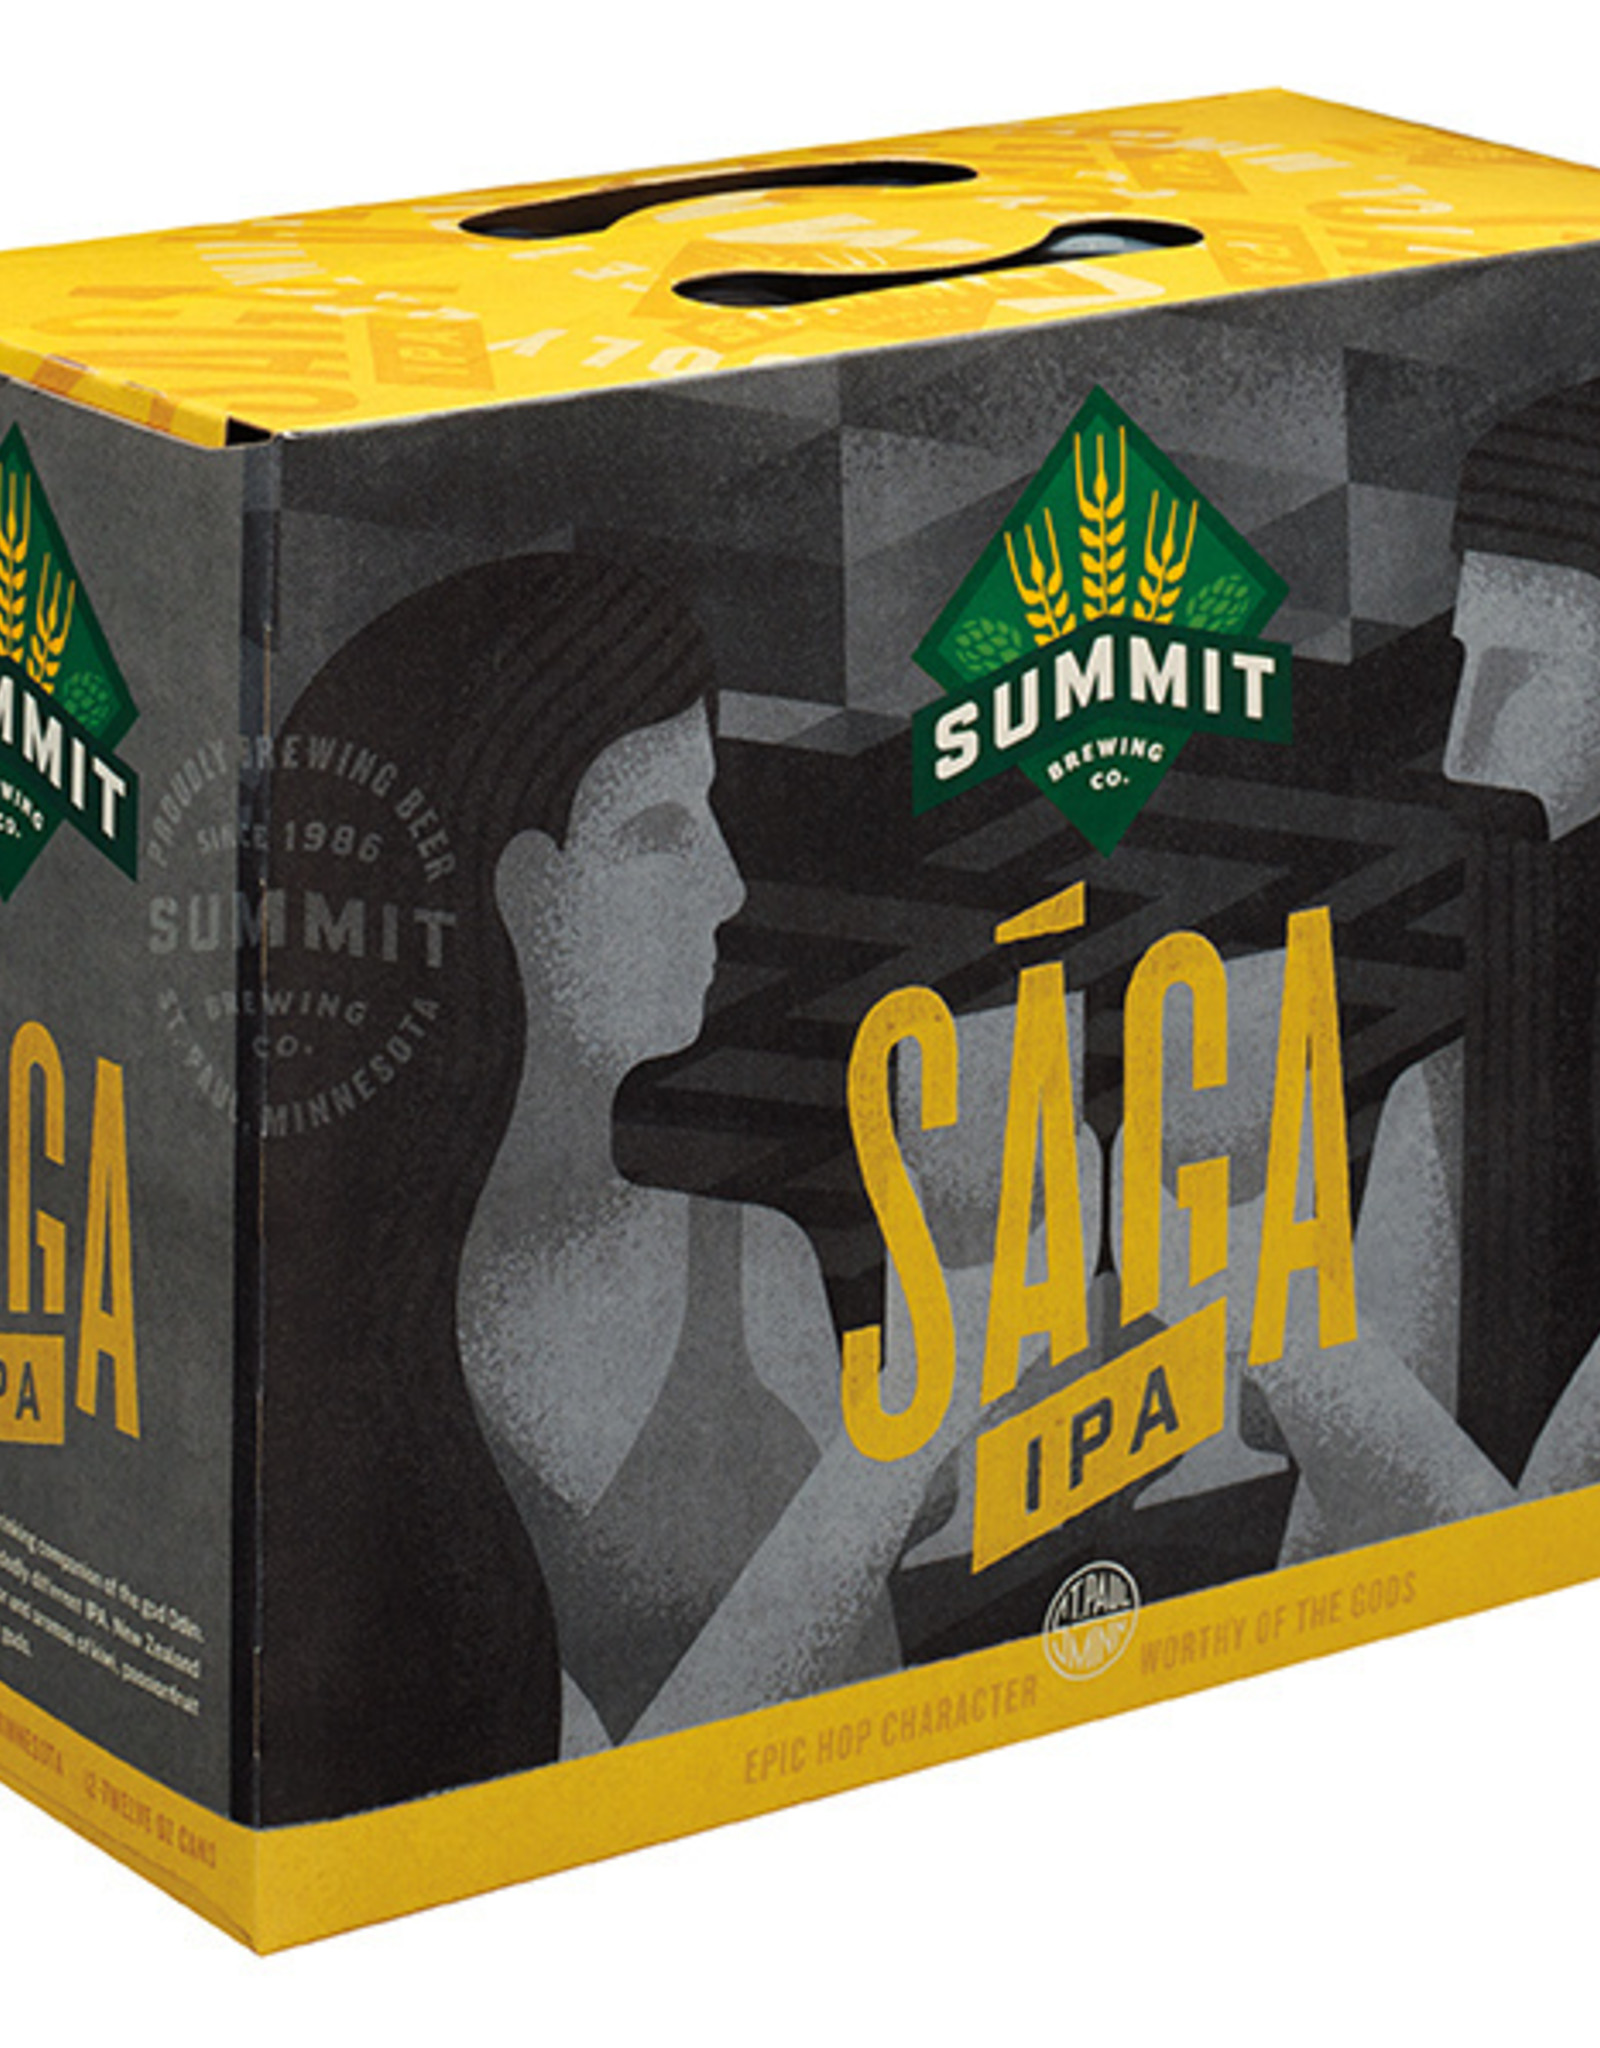 Summit Saga Hazy IPA 12x12 oz cans